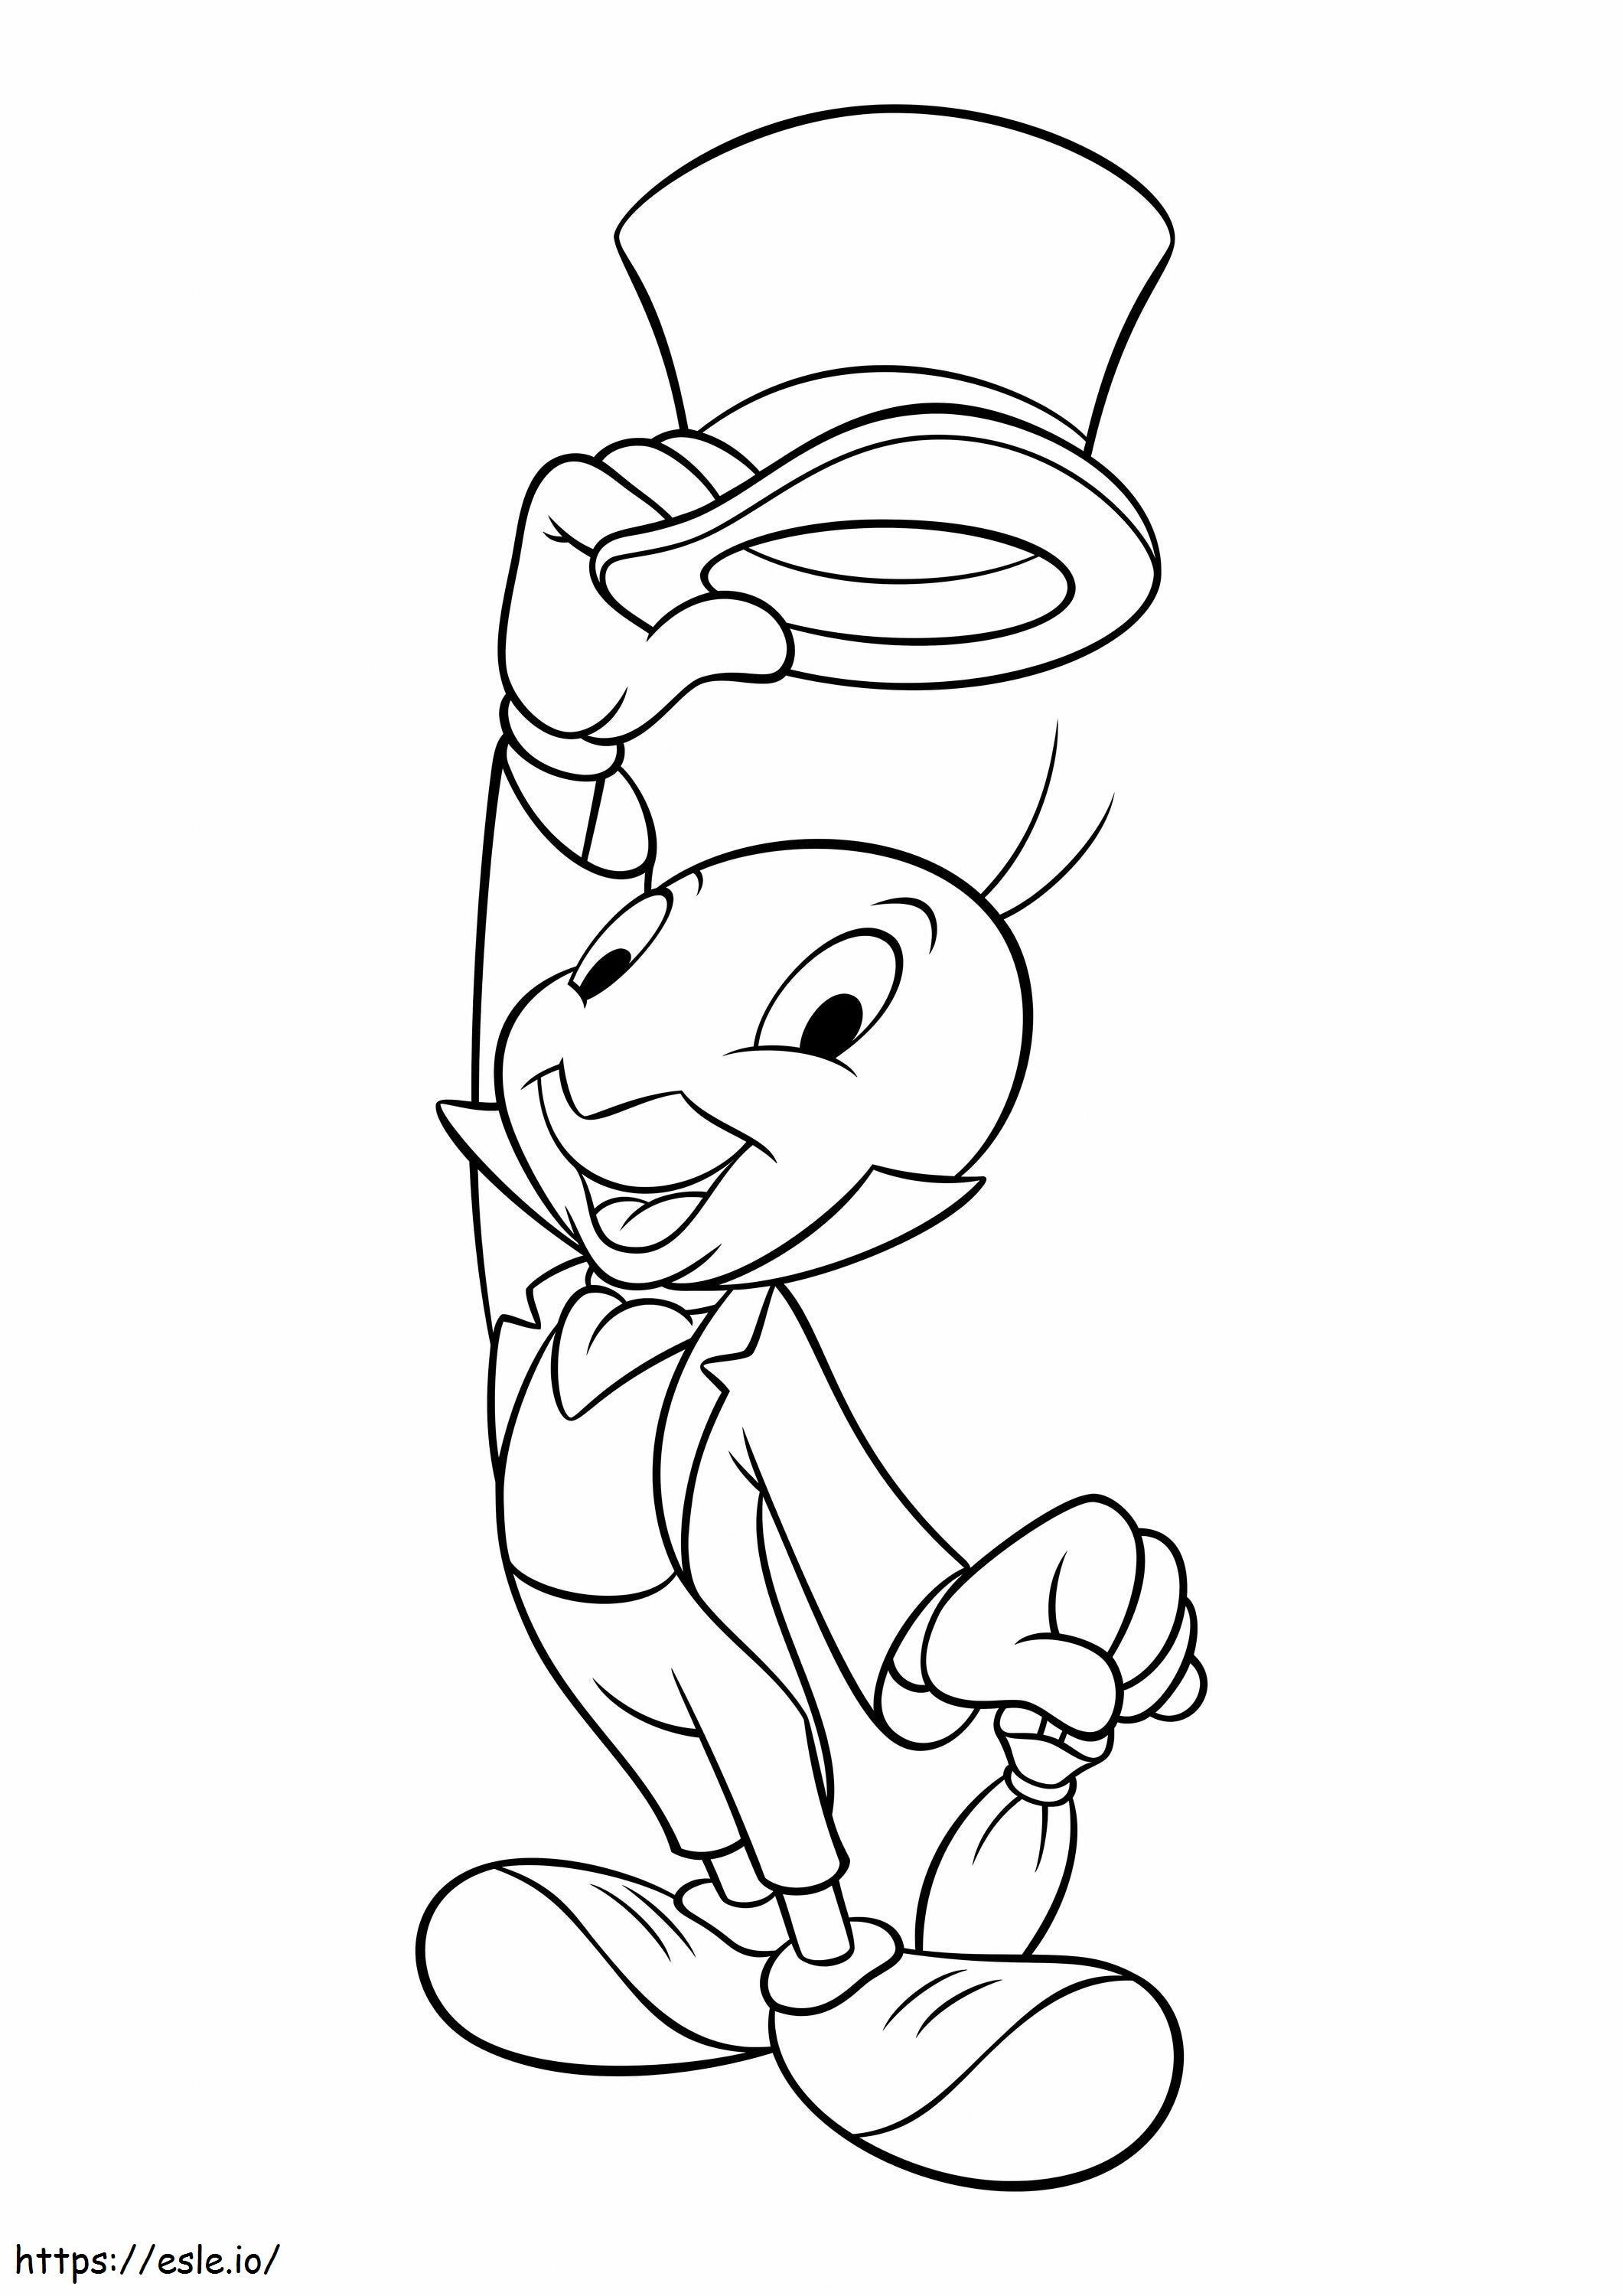 Jiminy Cricket Ölçekli Şapkayı Kaldırdı boyama